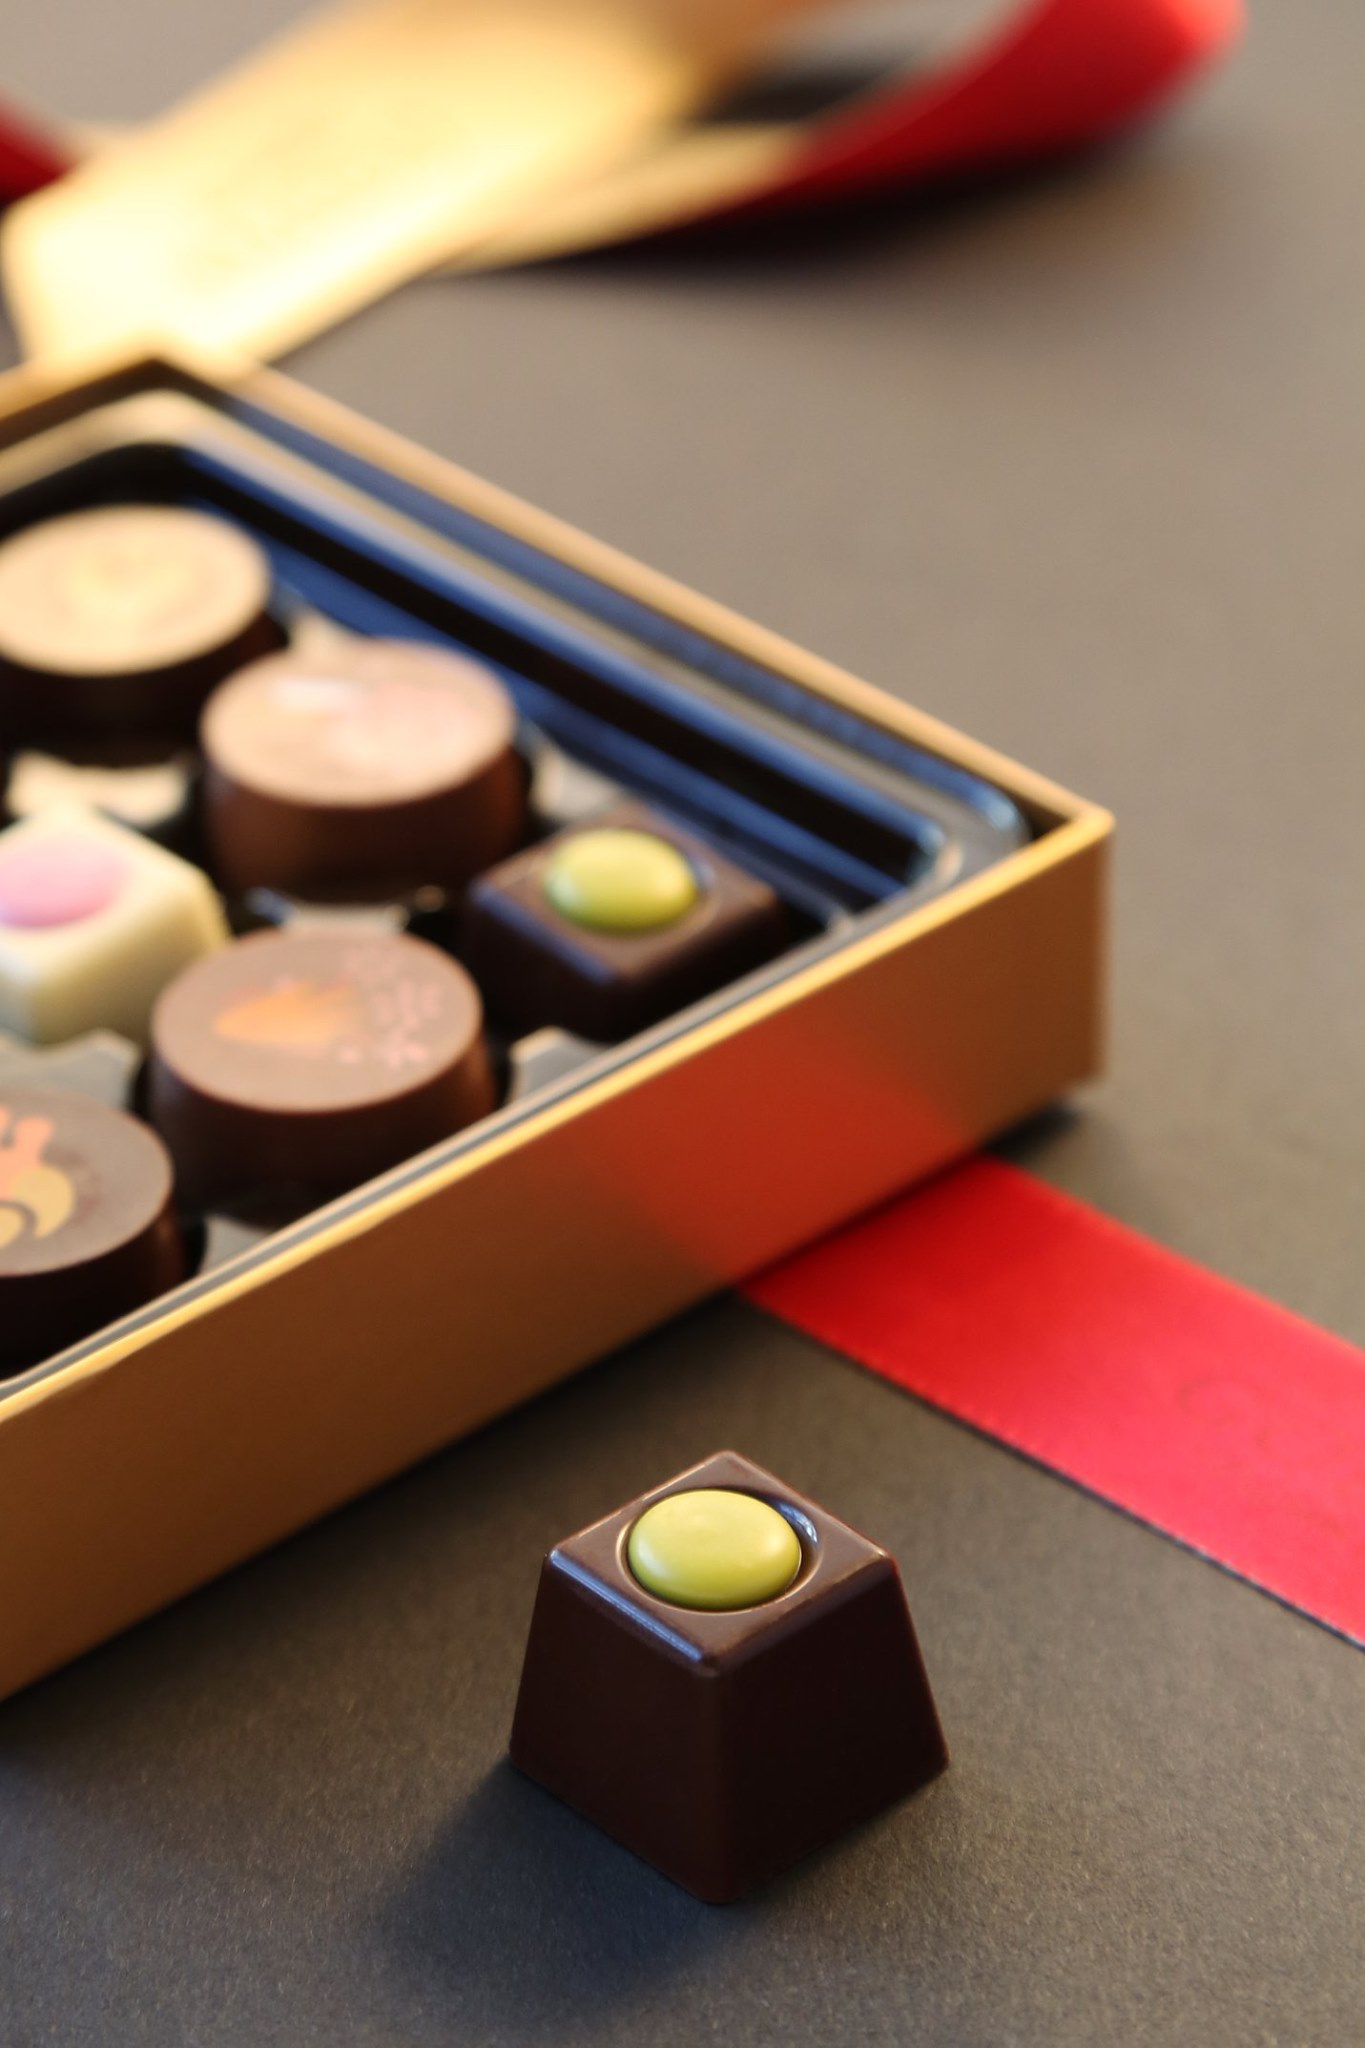 😋 金裝嘉年華巧克力系列有著令人回味無窮的味道及質感: